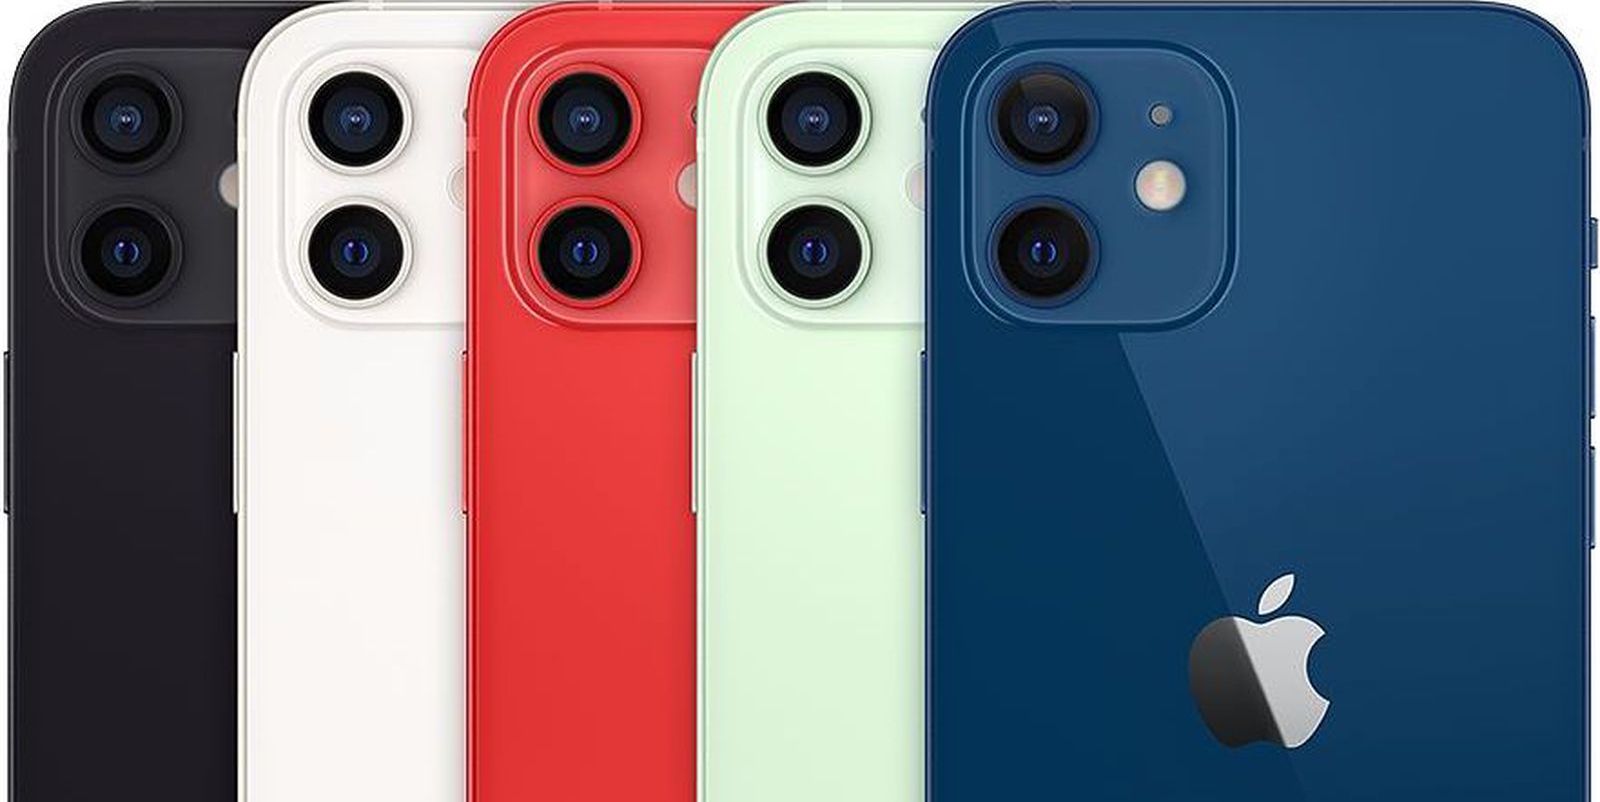 iphone 12 colors - Cosa sappiamo dell’iPhone 13 finora?